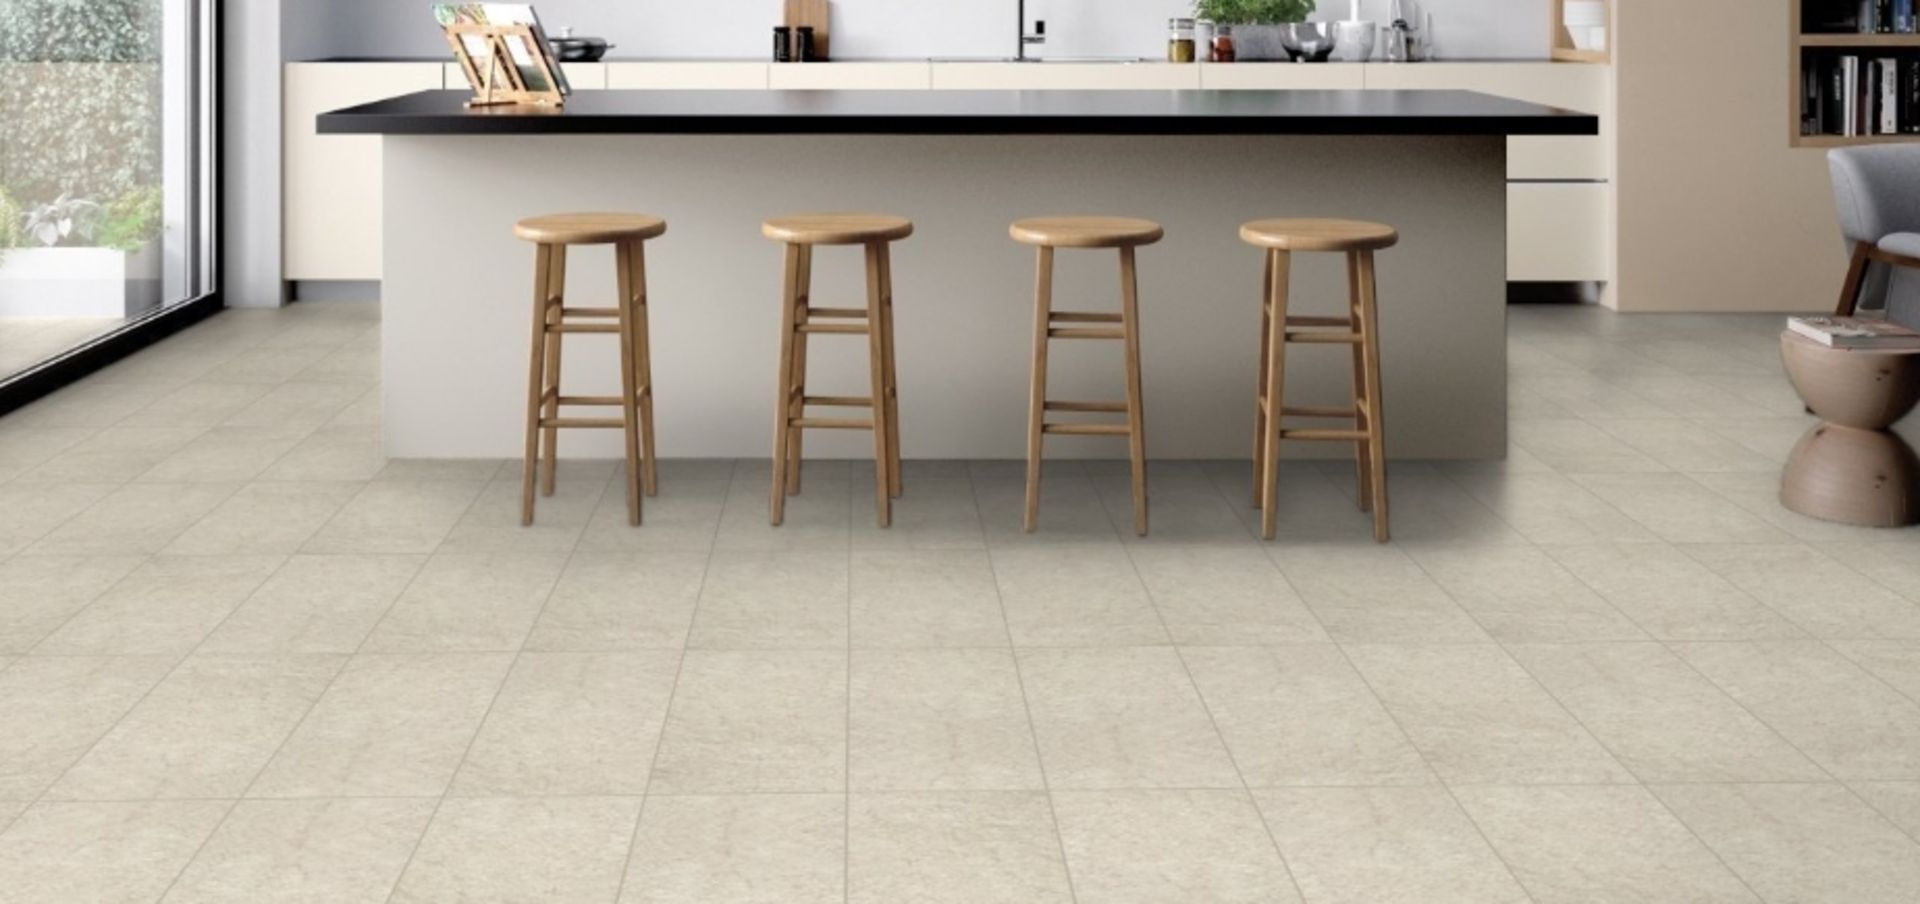 12 x Boxes of RAK Porcelain Tiles - Design Concrete Range - Sand Colour Matt Finish - Size: 120x60cm - Image 5 of 12